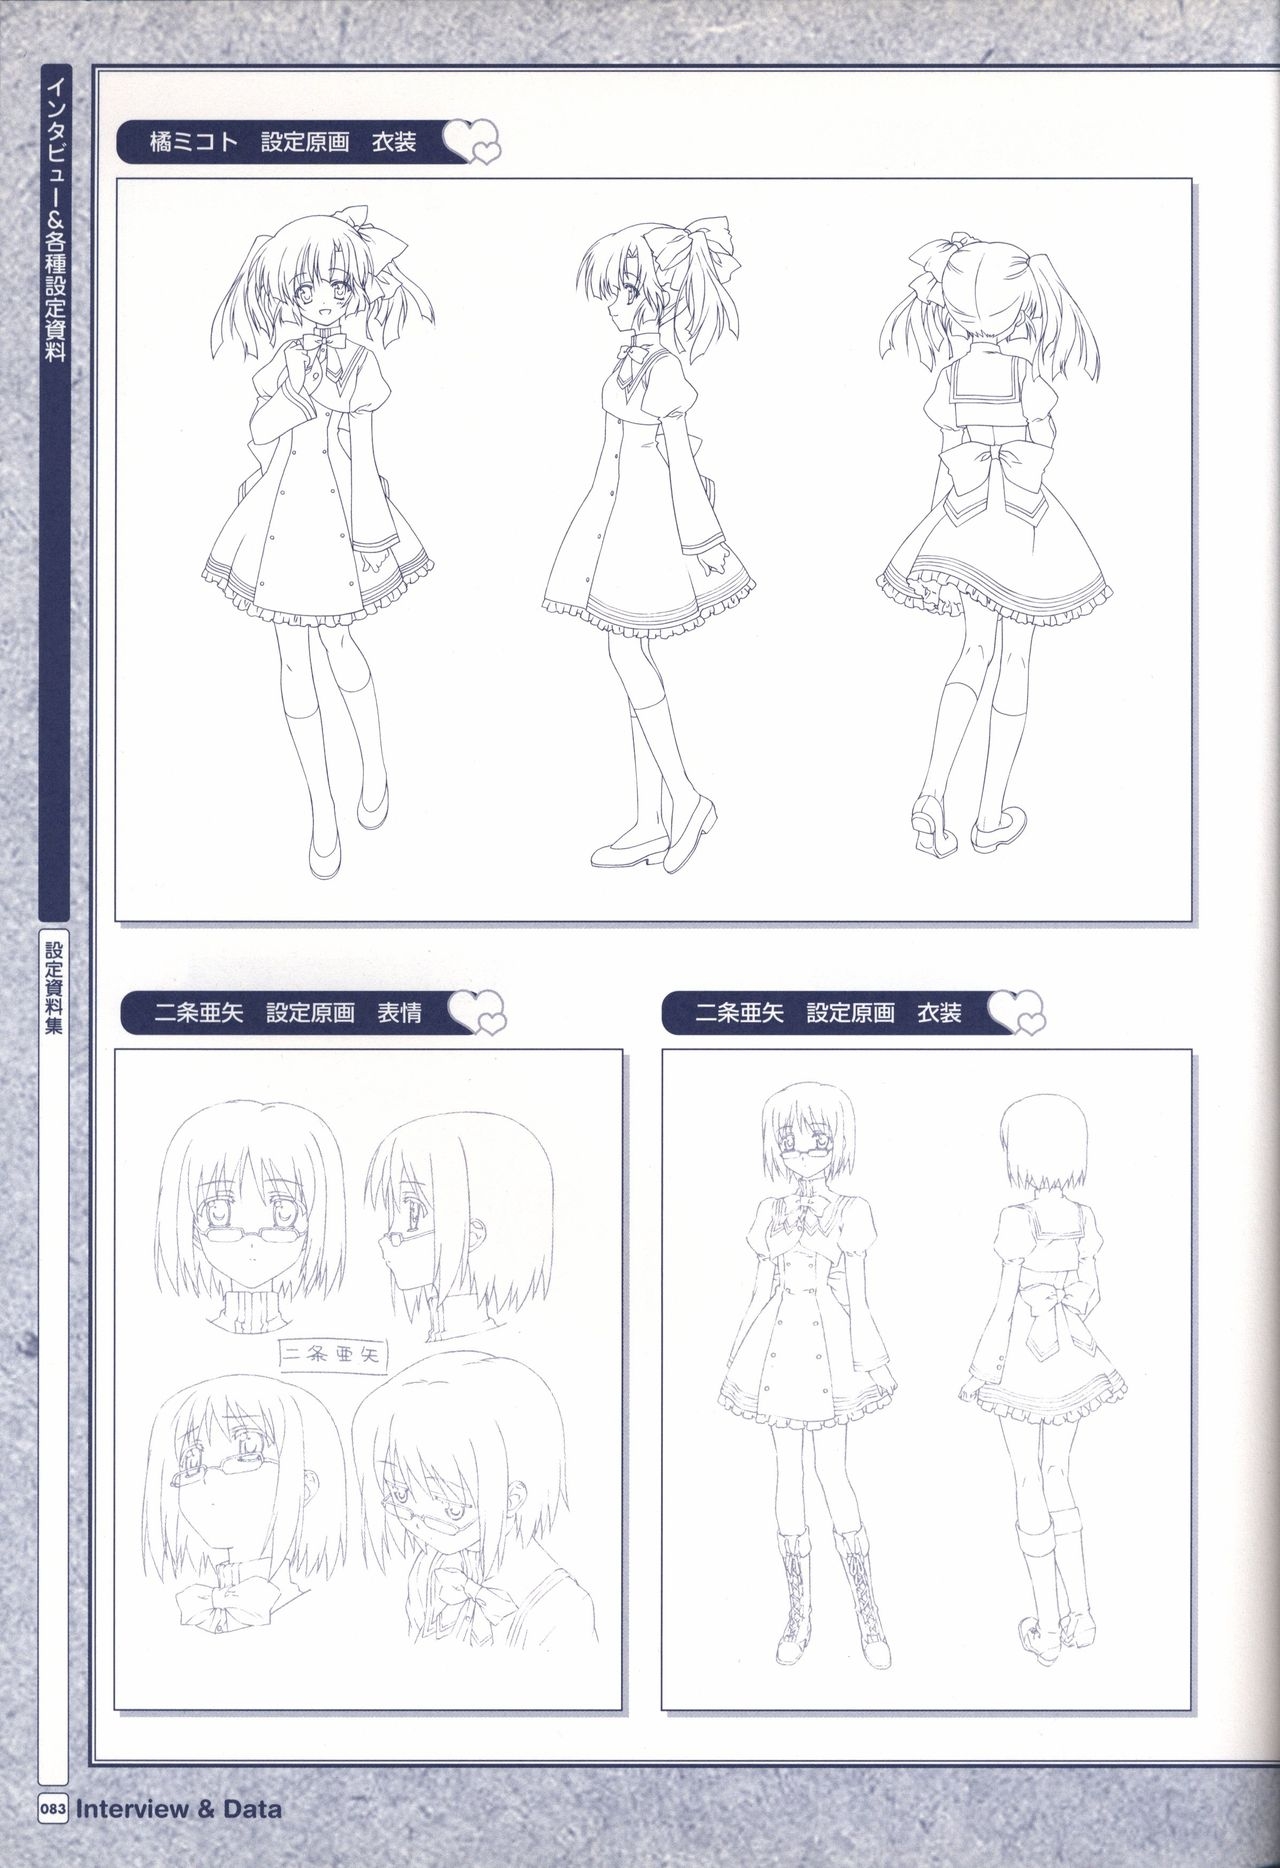 TV ANIME Akaneiro ni Somaru Saka Visual Guide Book 83